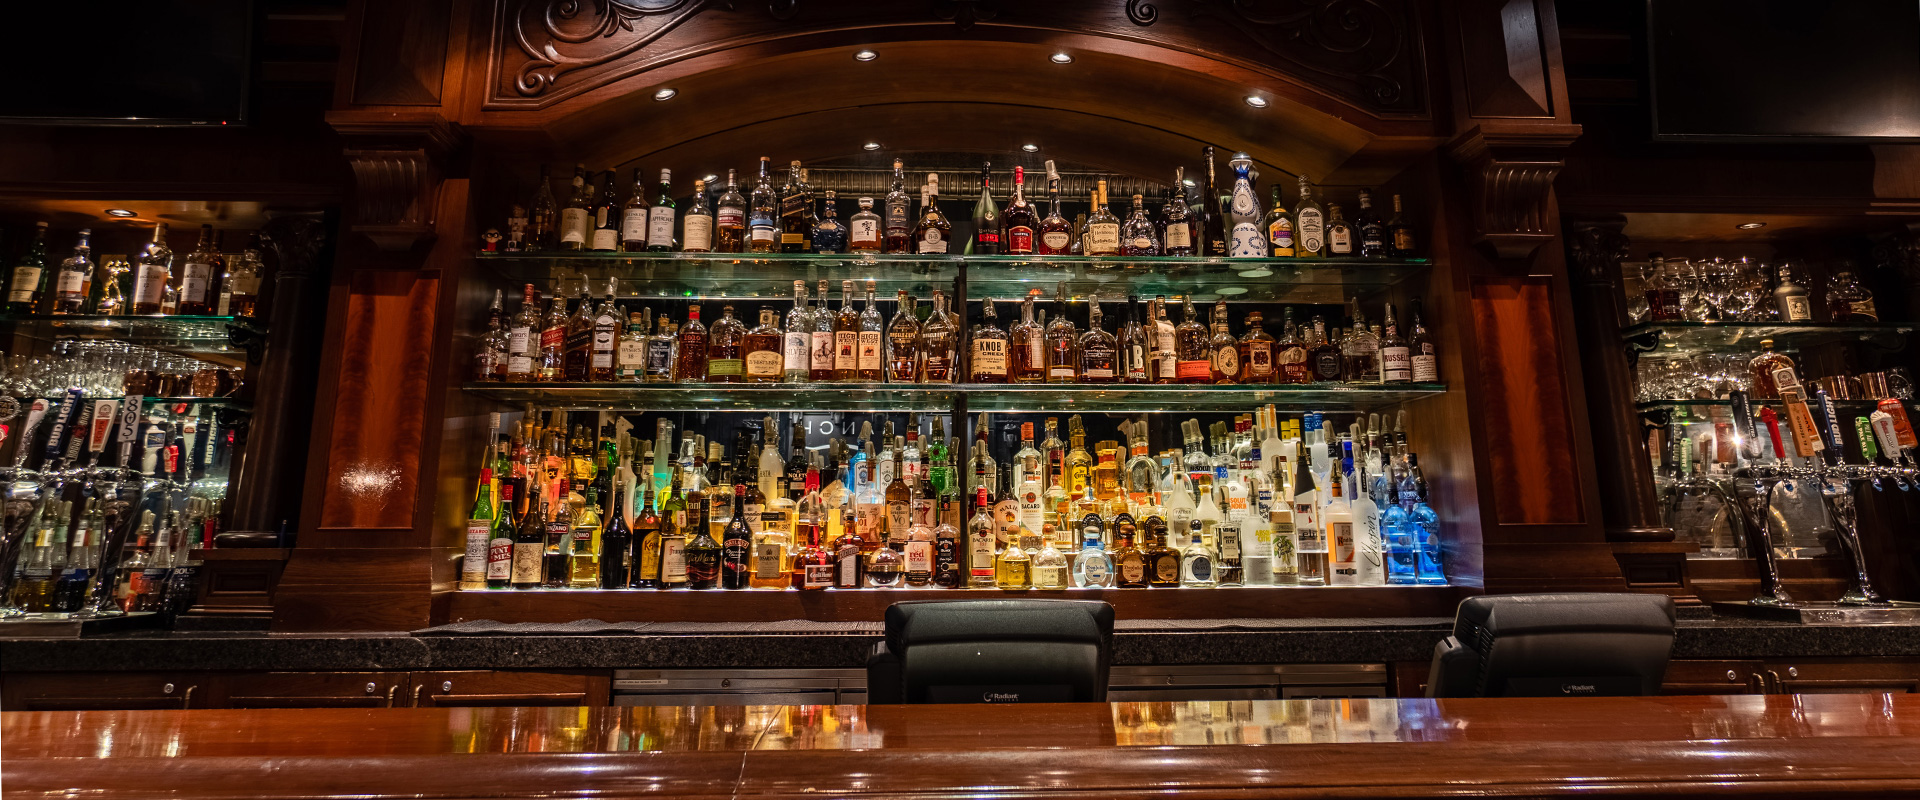 The RANCH Saloon Bar